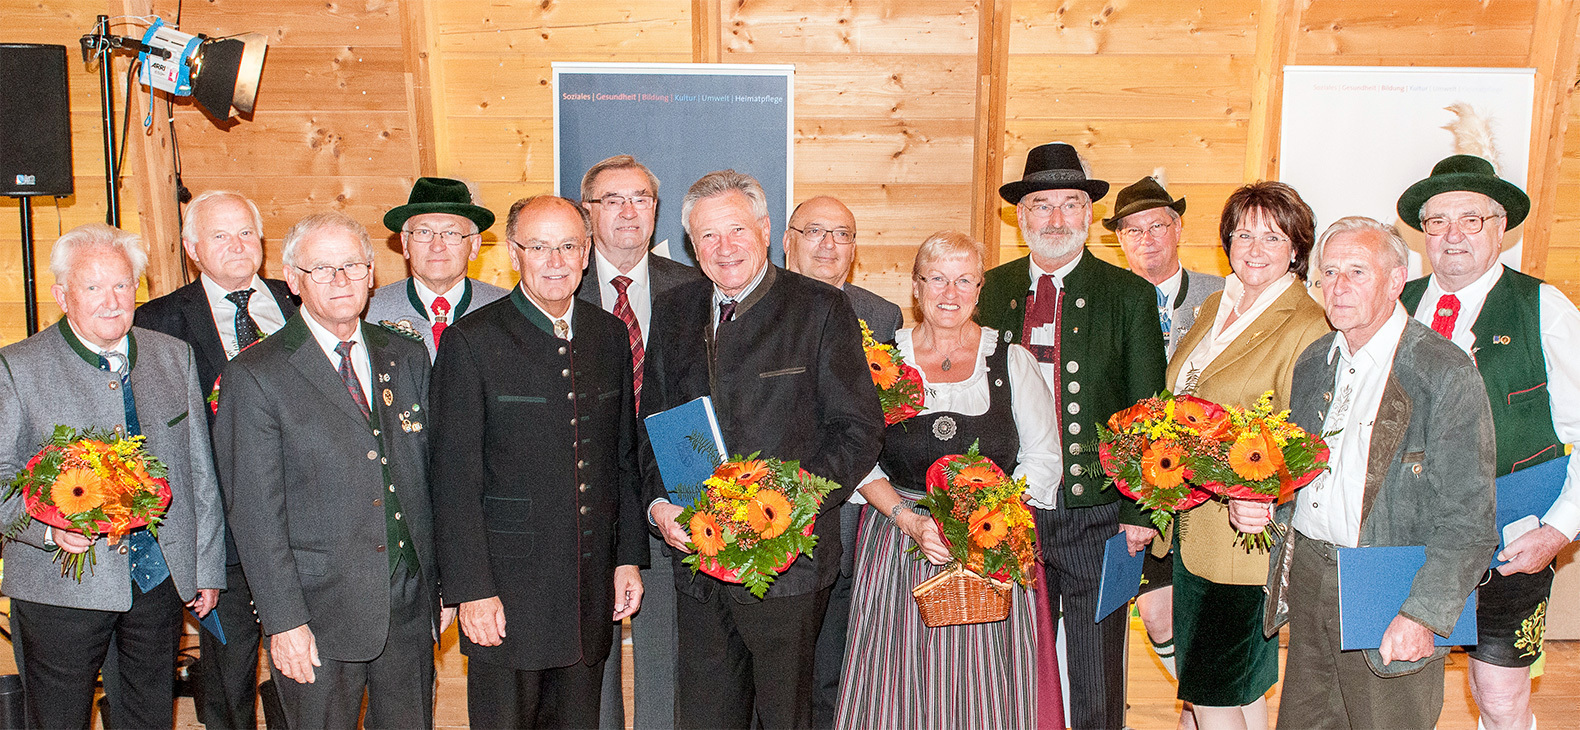 Gruppenfoto mit 13 Männer und Frauen die mit der Bezirksmedaille ausgezeichnet wurden; einige halten Blumensträuße in den Händen.